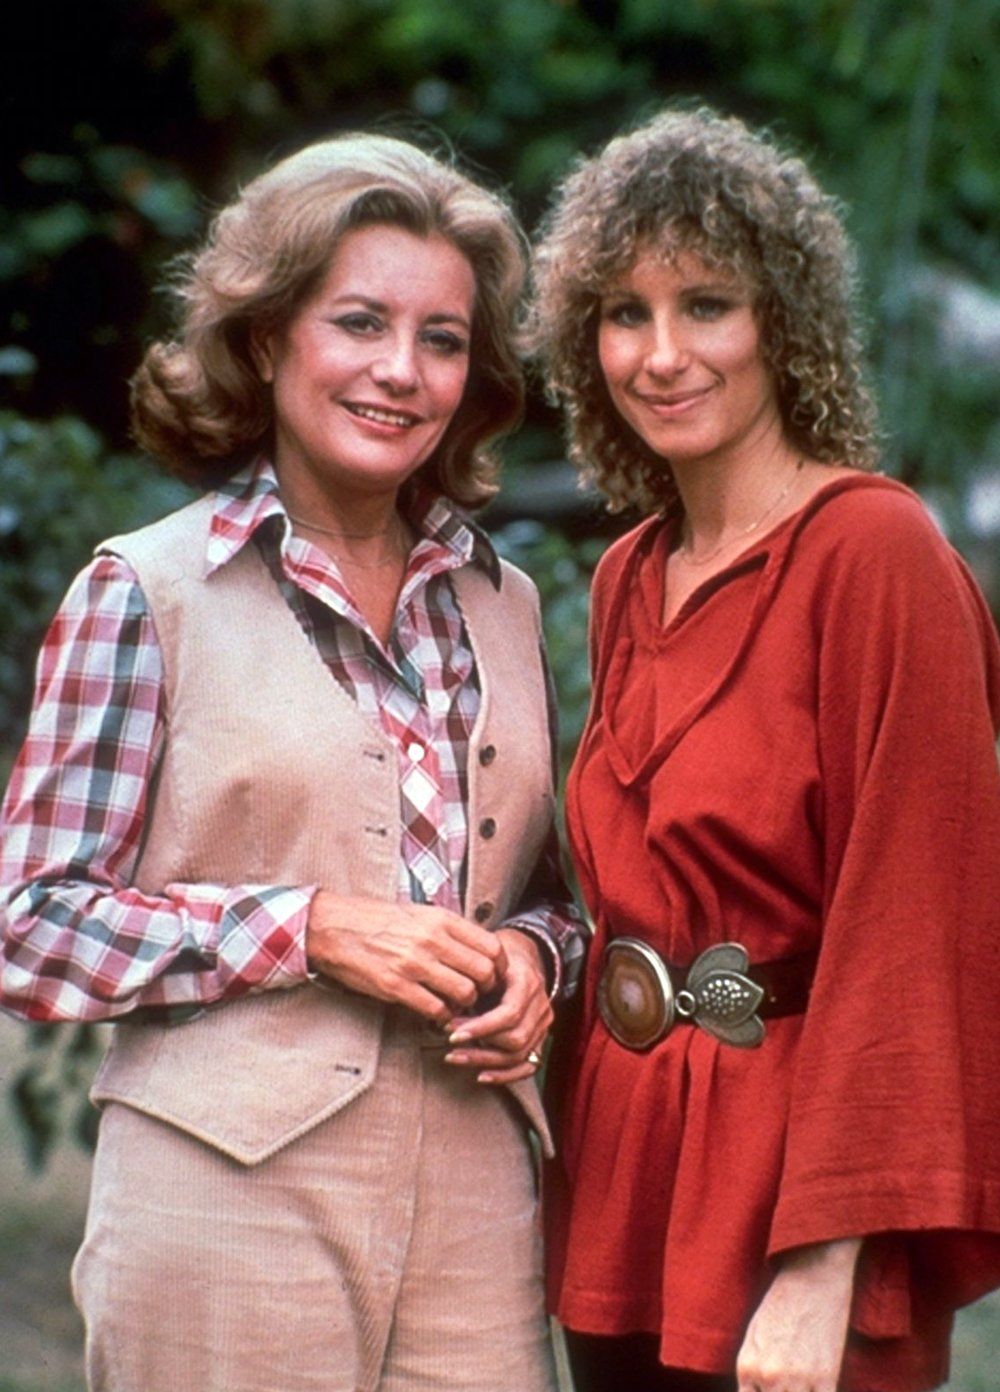 Barbara Walters interviews Barbra Streisand in 1976.